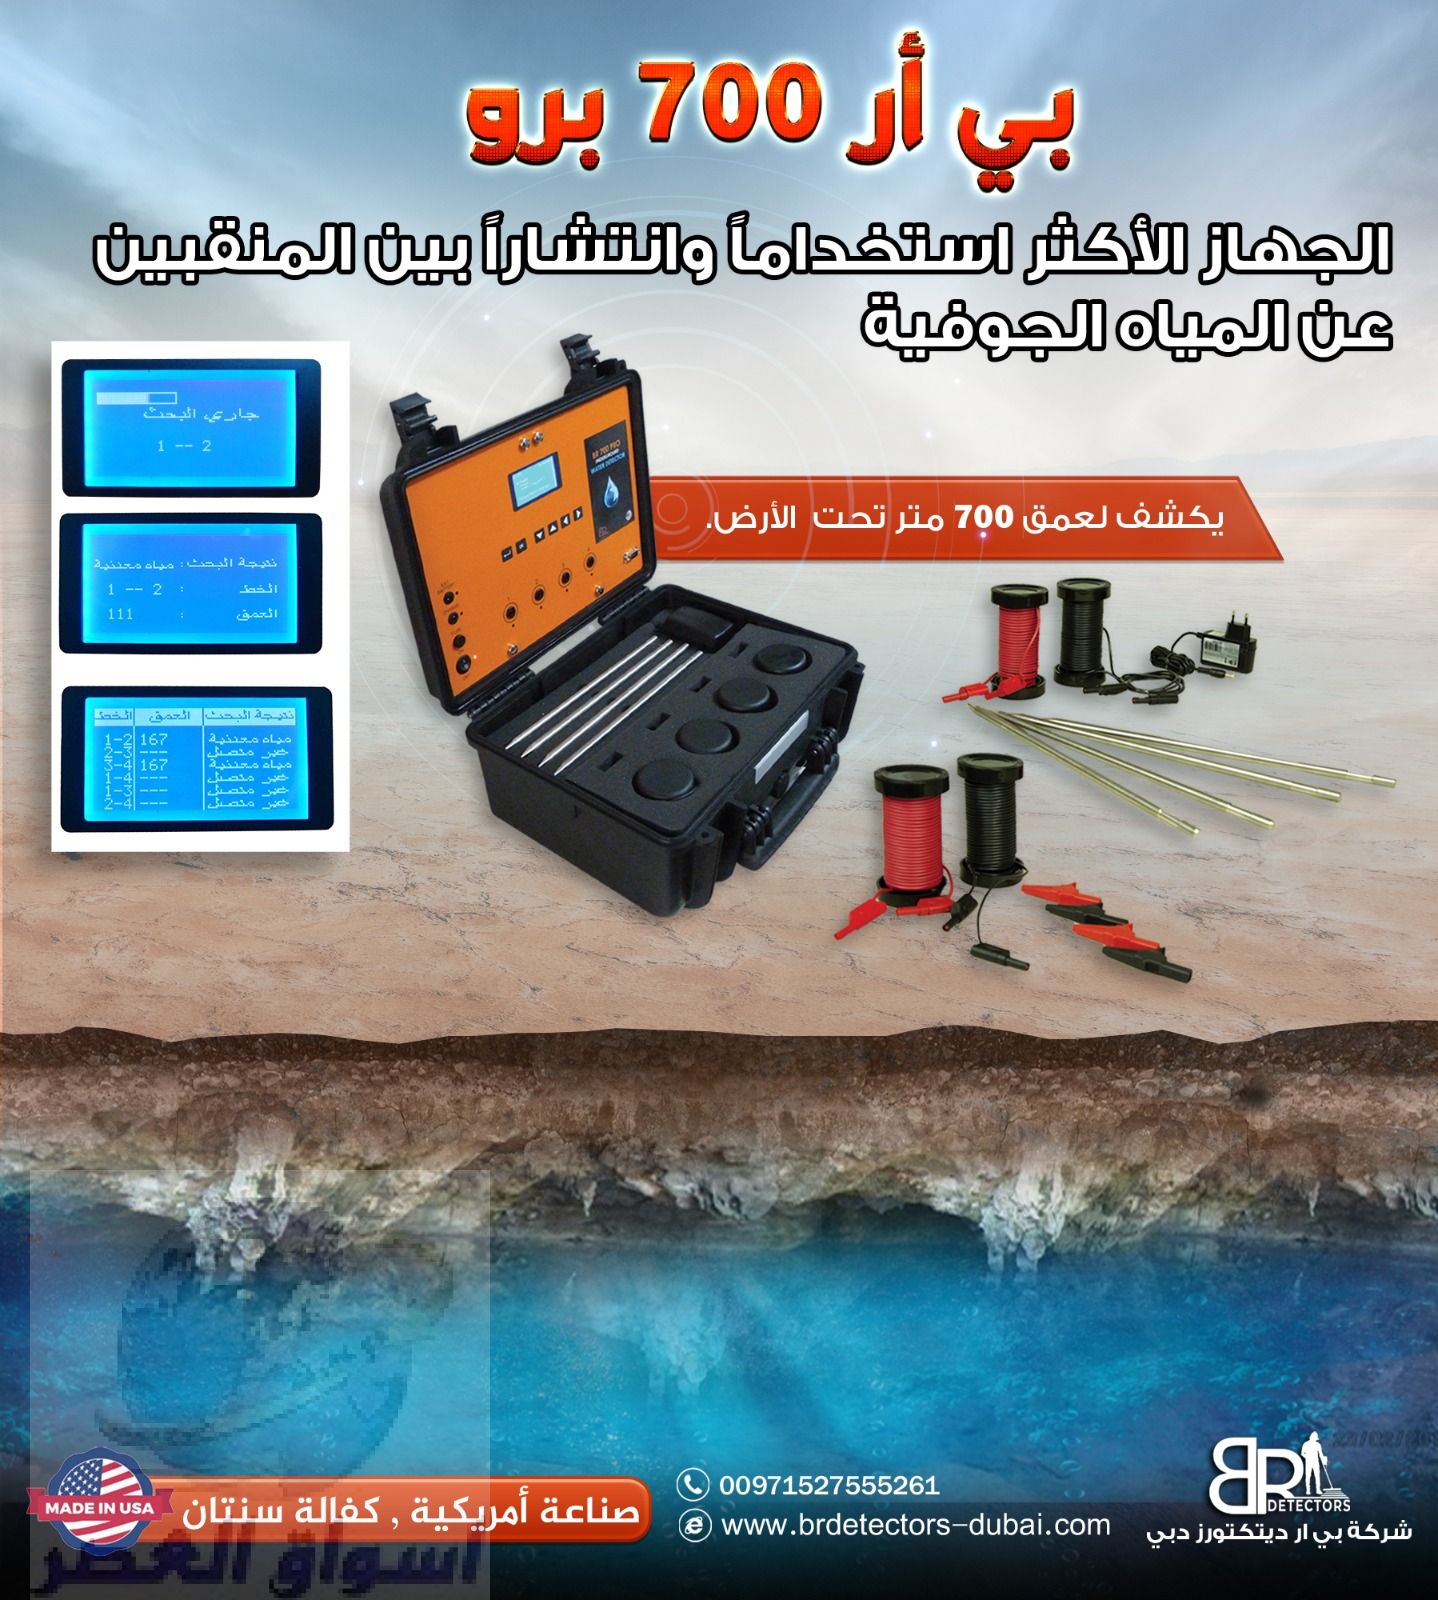 اجهزة كشف المياه في الامارات – BR 700 PRO